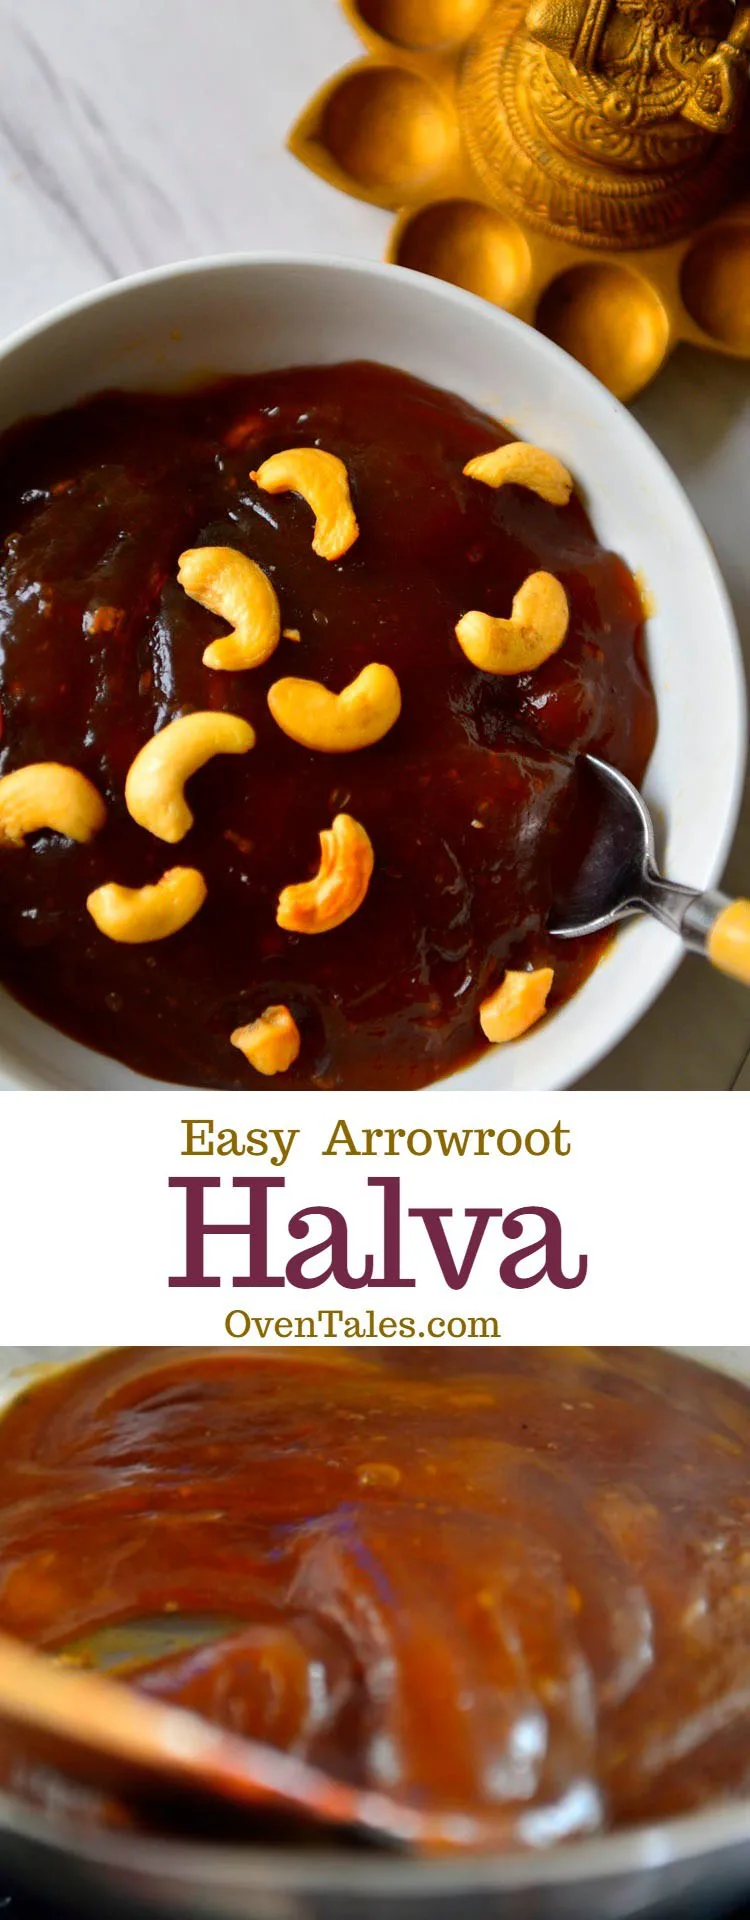 Easy Arrowroot Halva